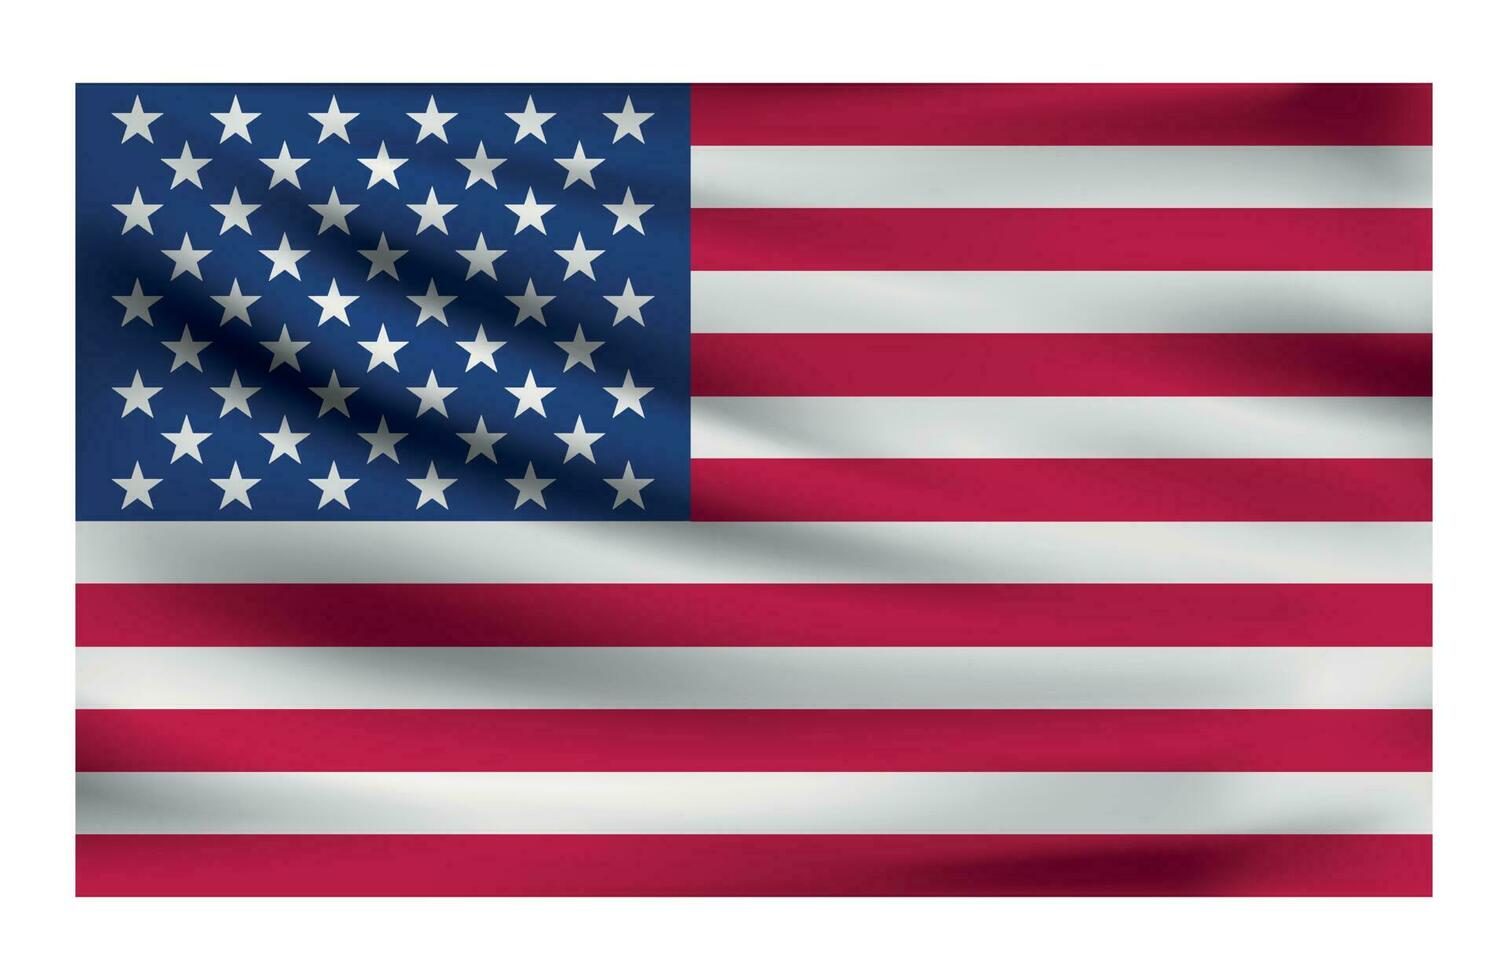 réaliste nationale drapeau de Etats-Unis. courant Etat drapeau fabriqué de tissu. vecteur